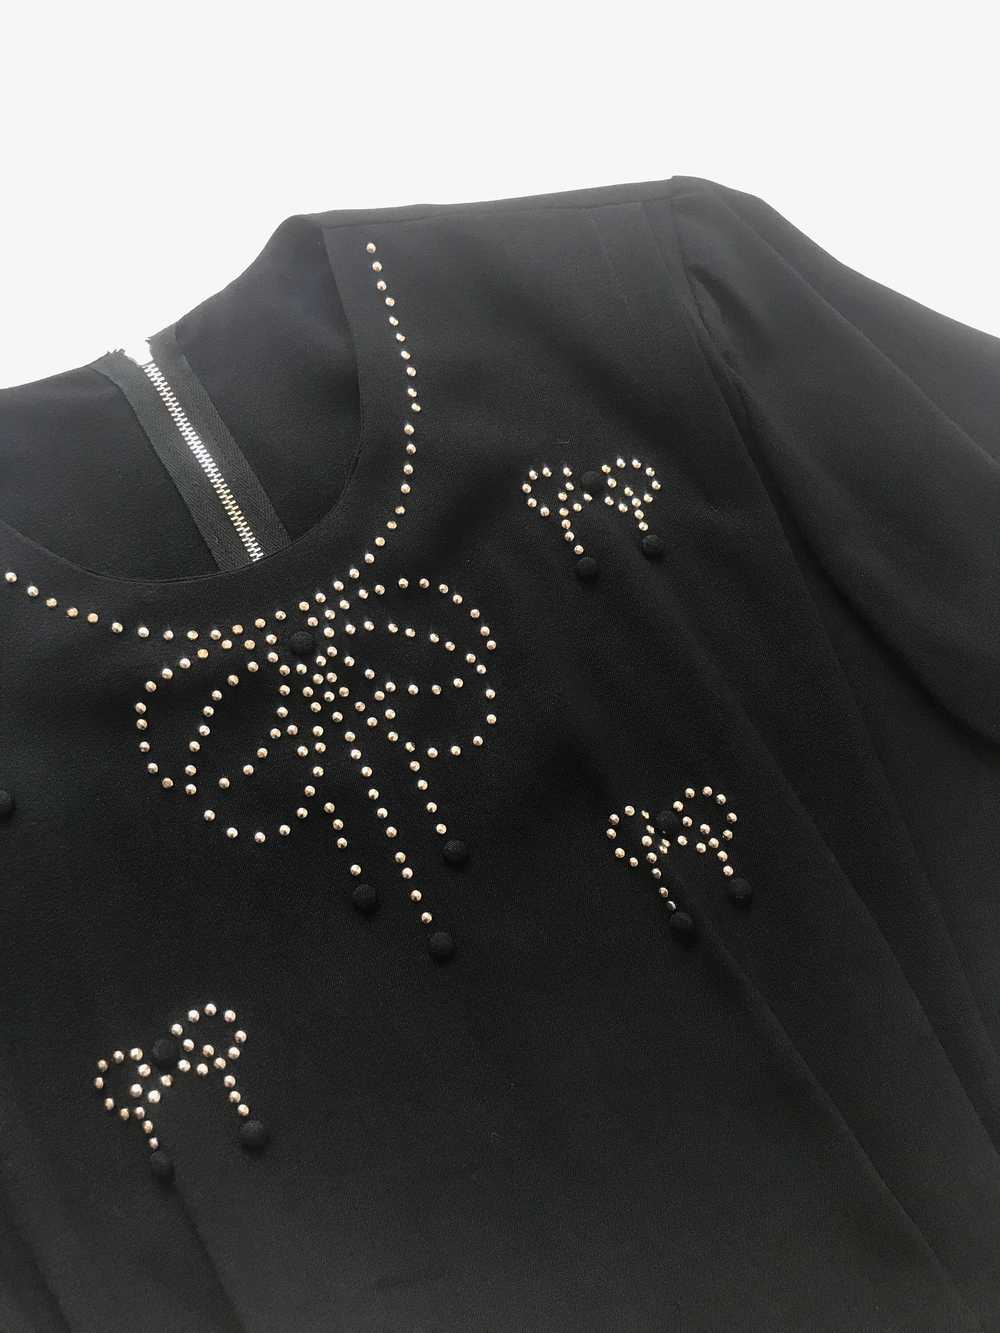 1940s Studded Black Crepe Rayon Dress - image 4